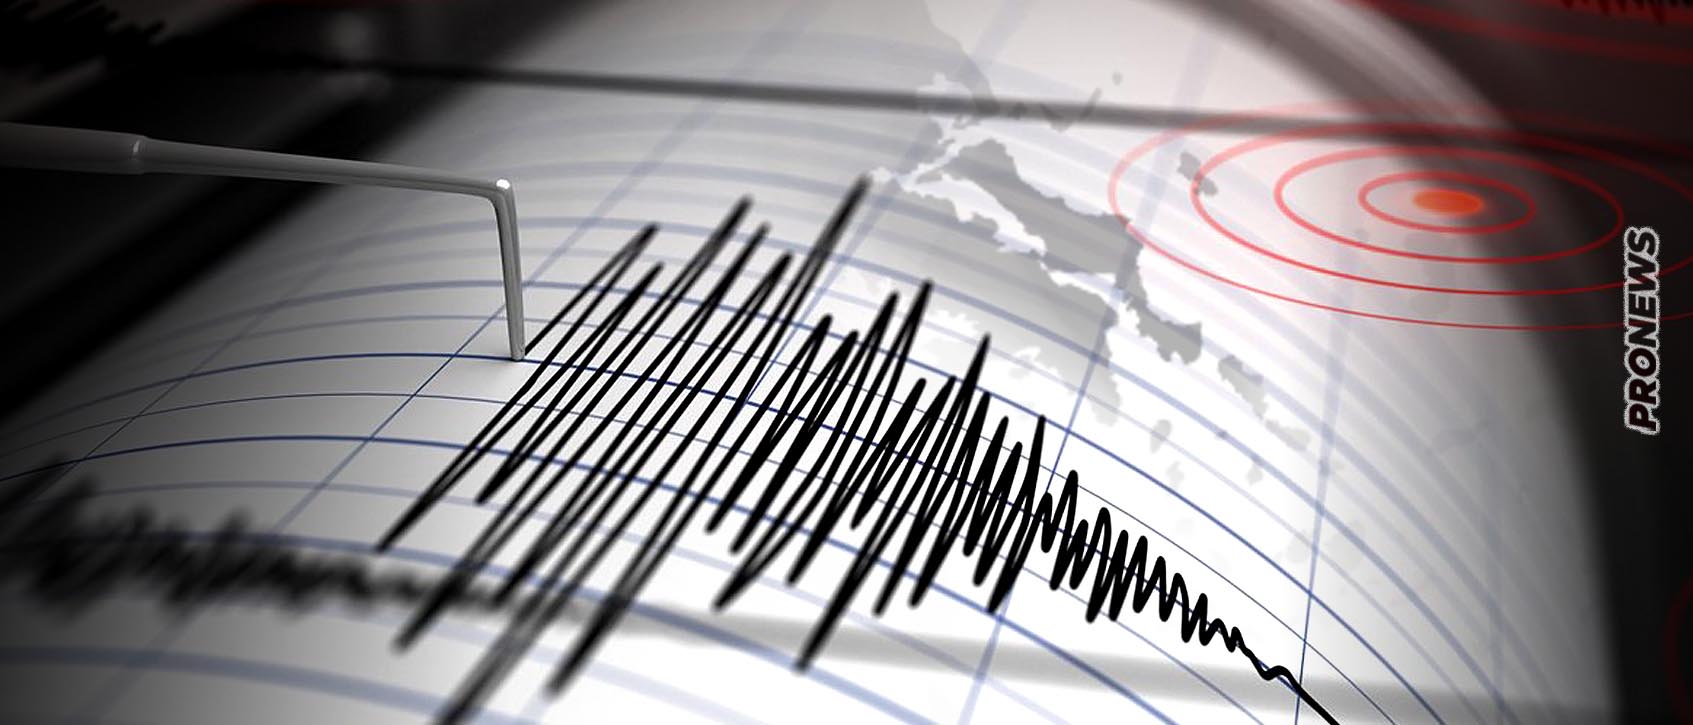 Νέο ρήγμα προκάλεσε τον σεισμό στην Εύβοια! – Αγωνία για την μετασεισμική ακολουθία – «Μεγάλη προσοχή» λέει ο Γ.Παπαδόπουλος